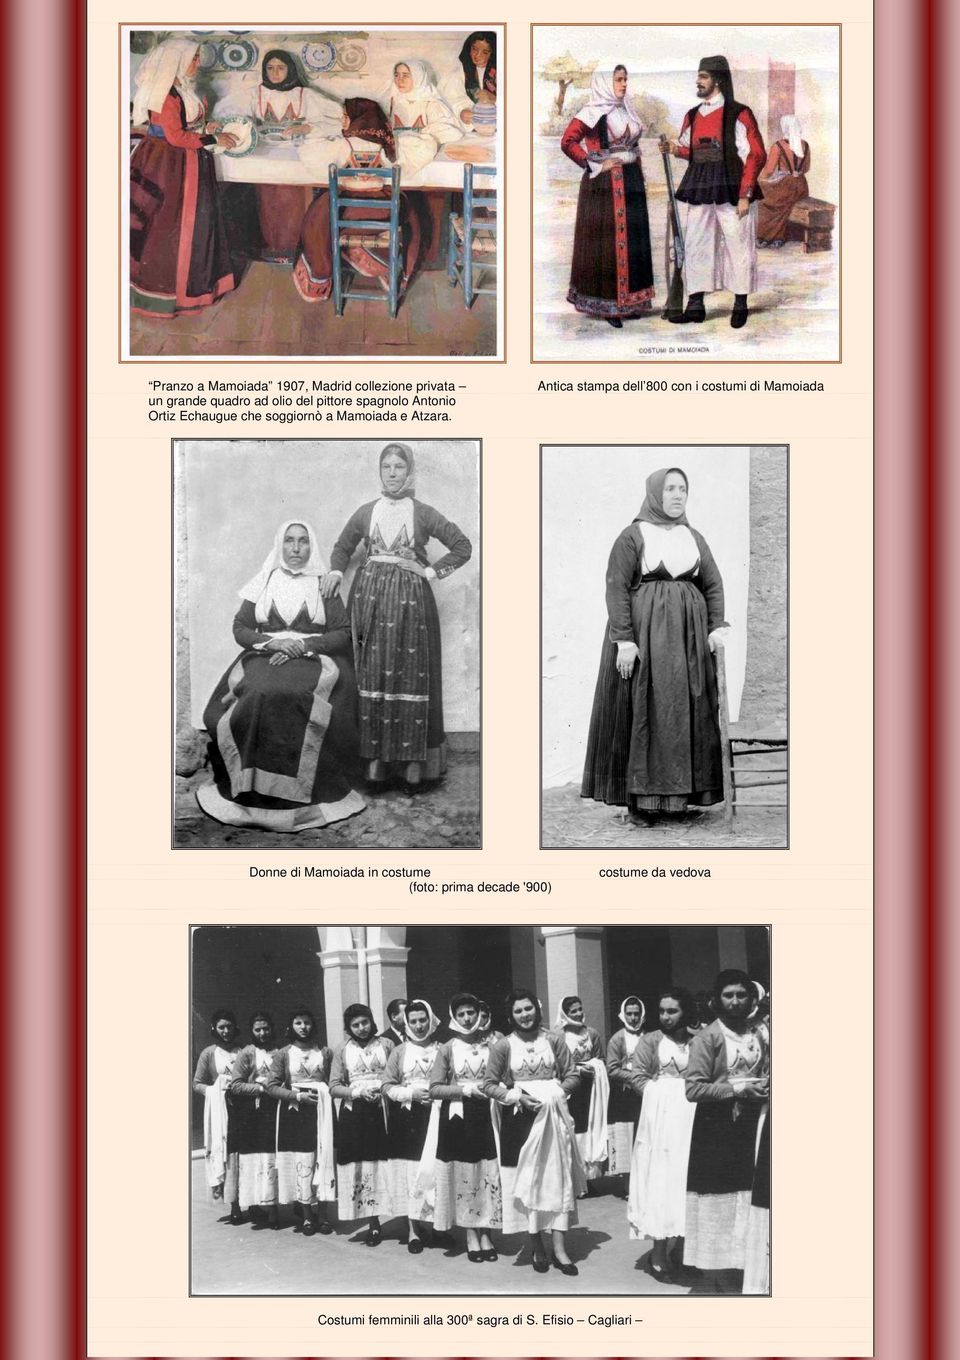 Antica stampa dell 800 con i costumi di Mamoiada Donne di Mamoiada in costume